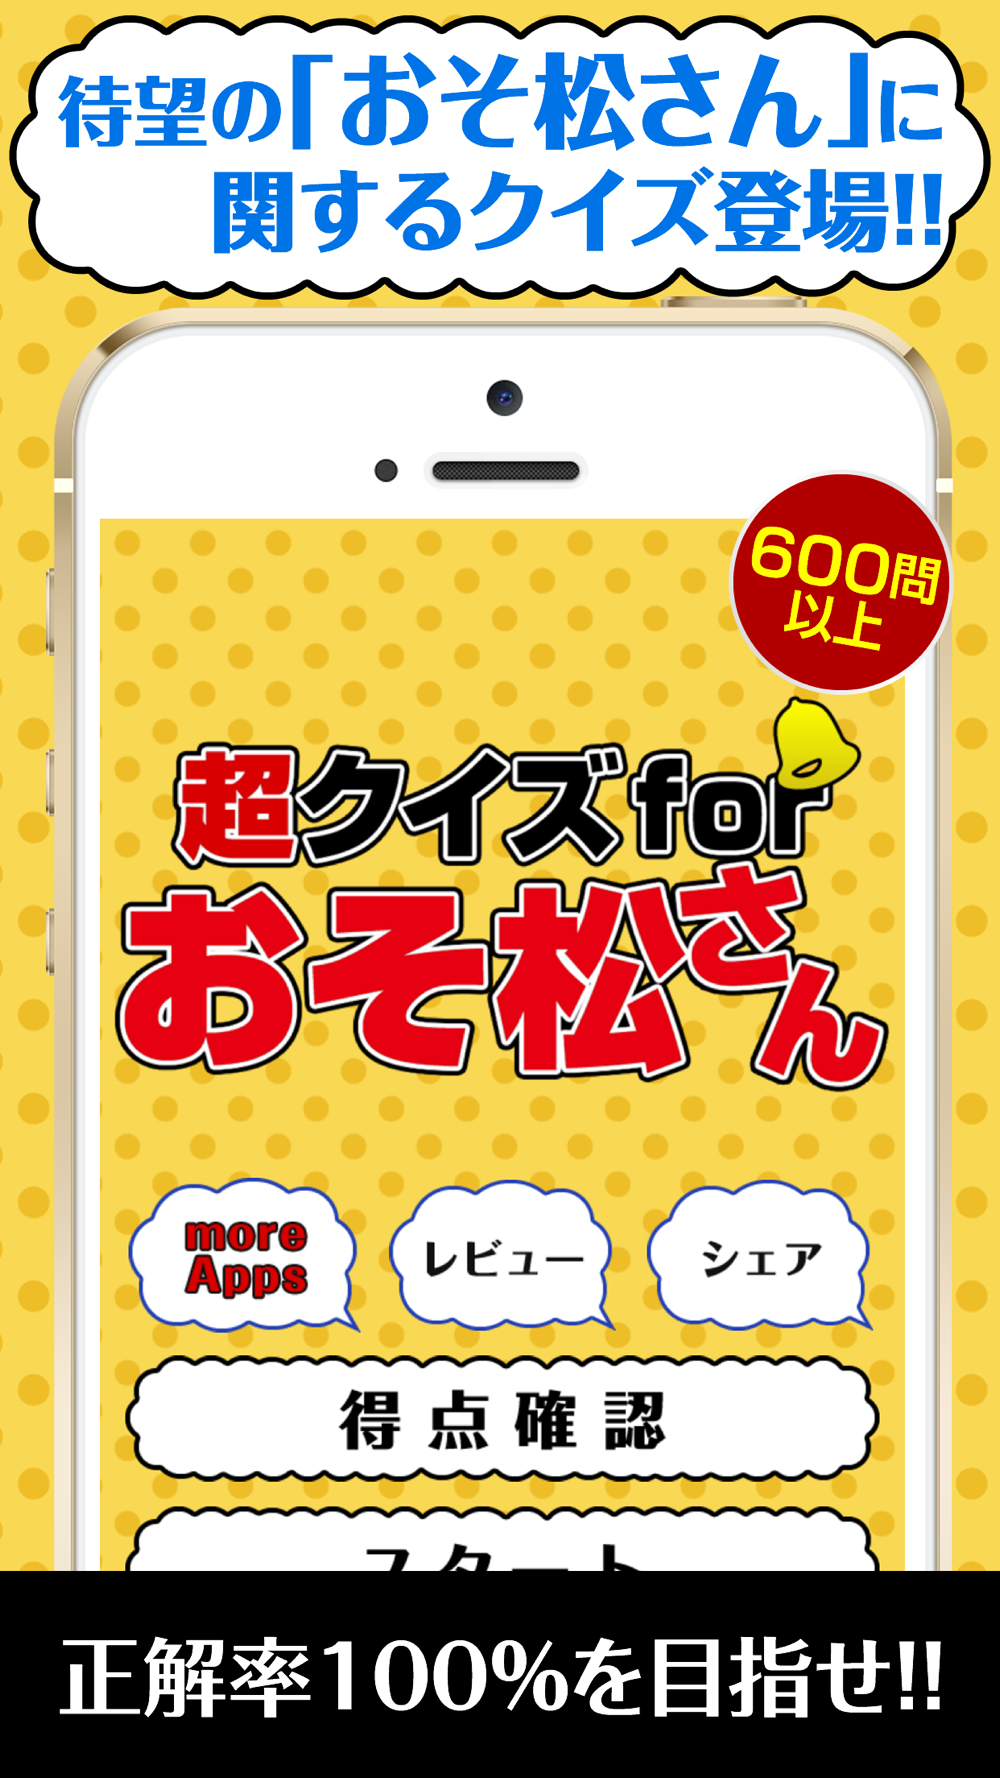 超クイズ For おそ松さん Free Download App For Iphone Steprimo Com